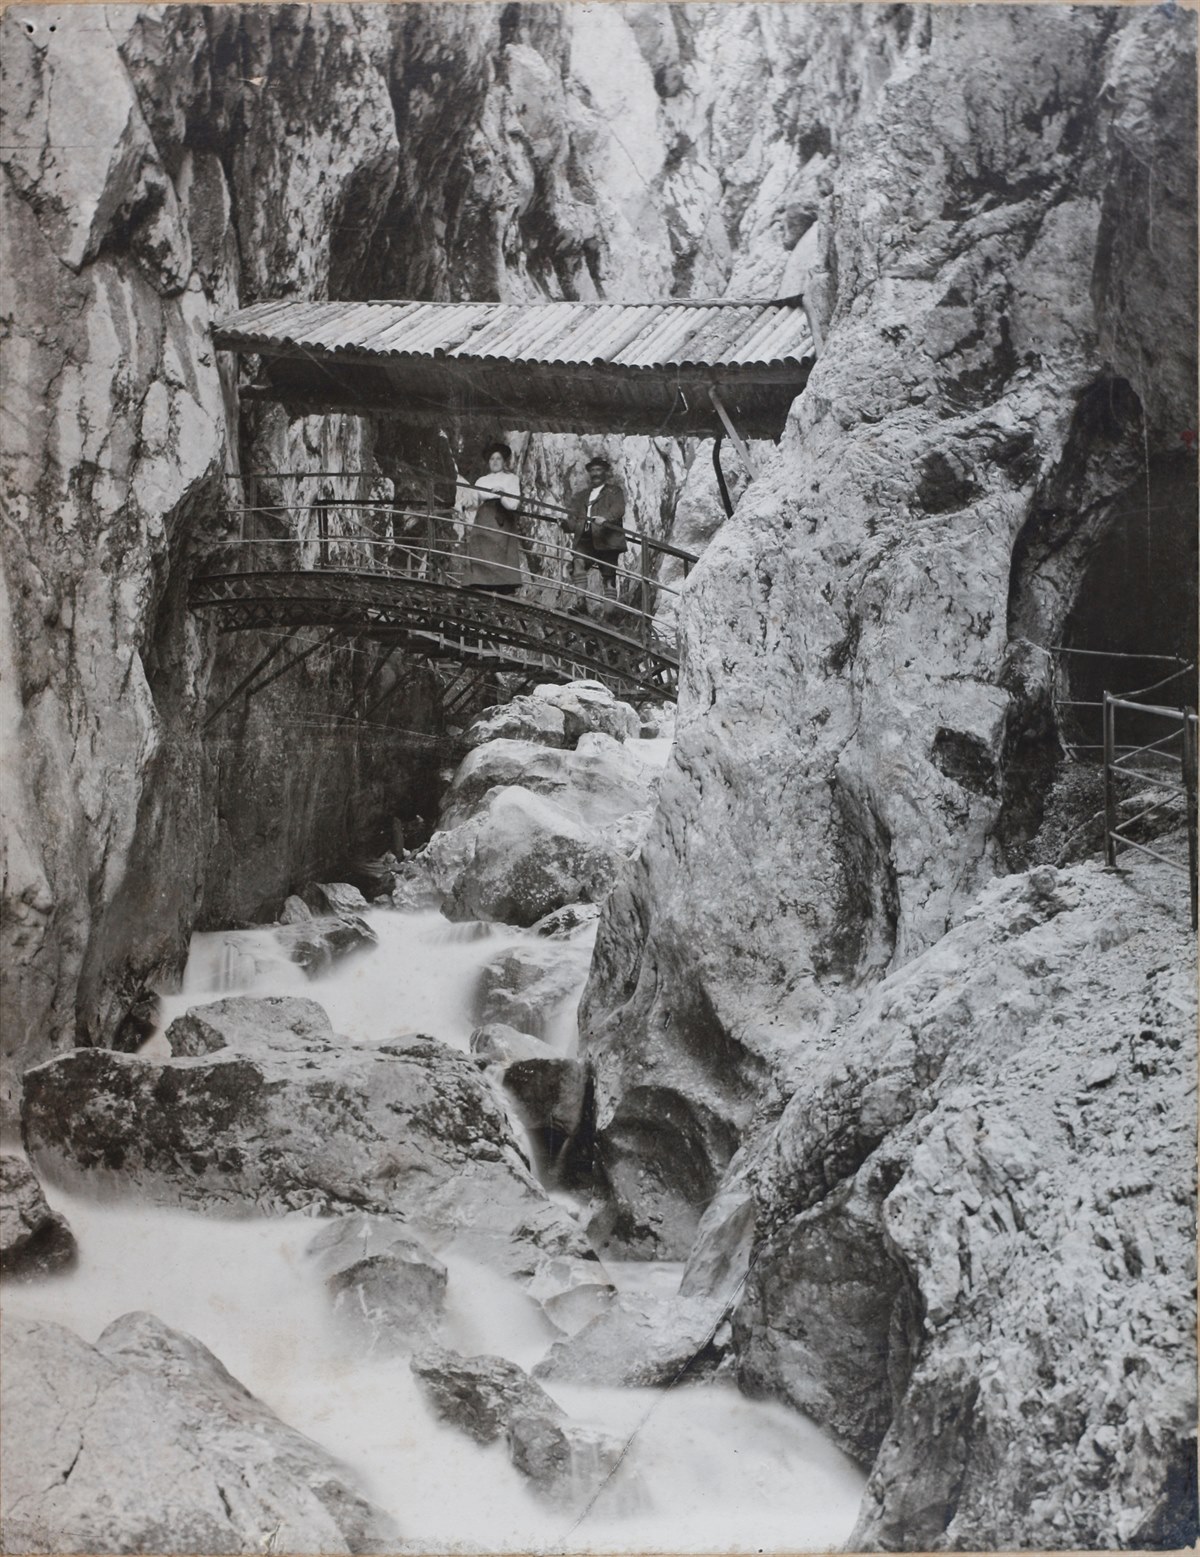 Historic arch bridge in the Höllentalklamm Gorge around 1905